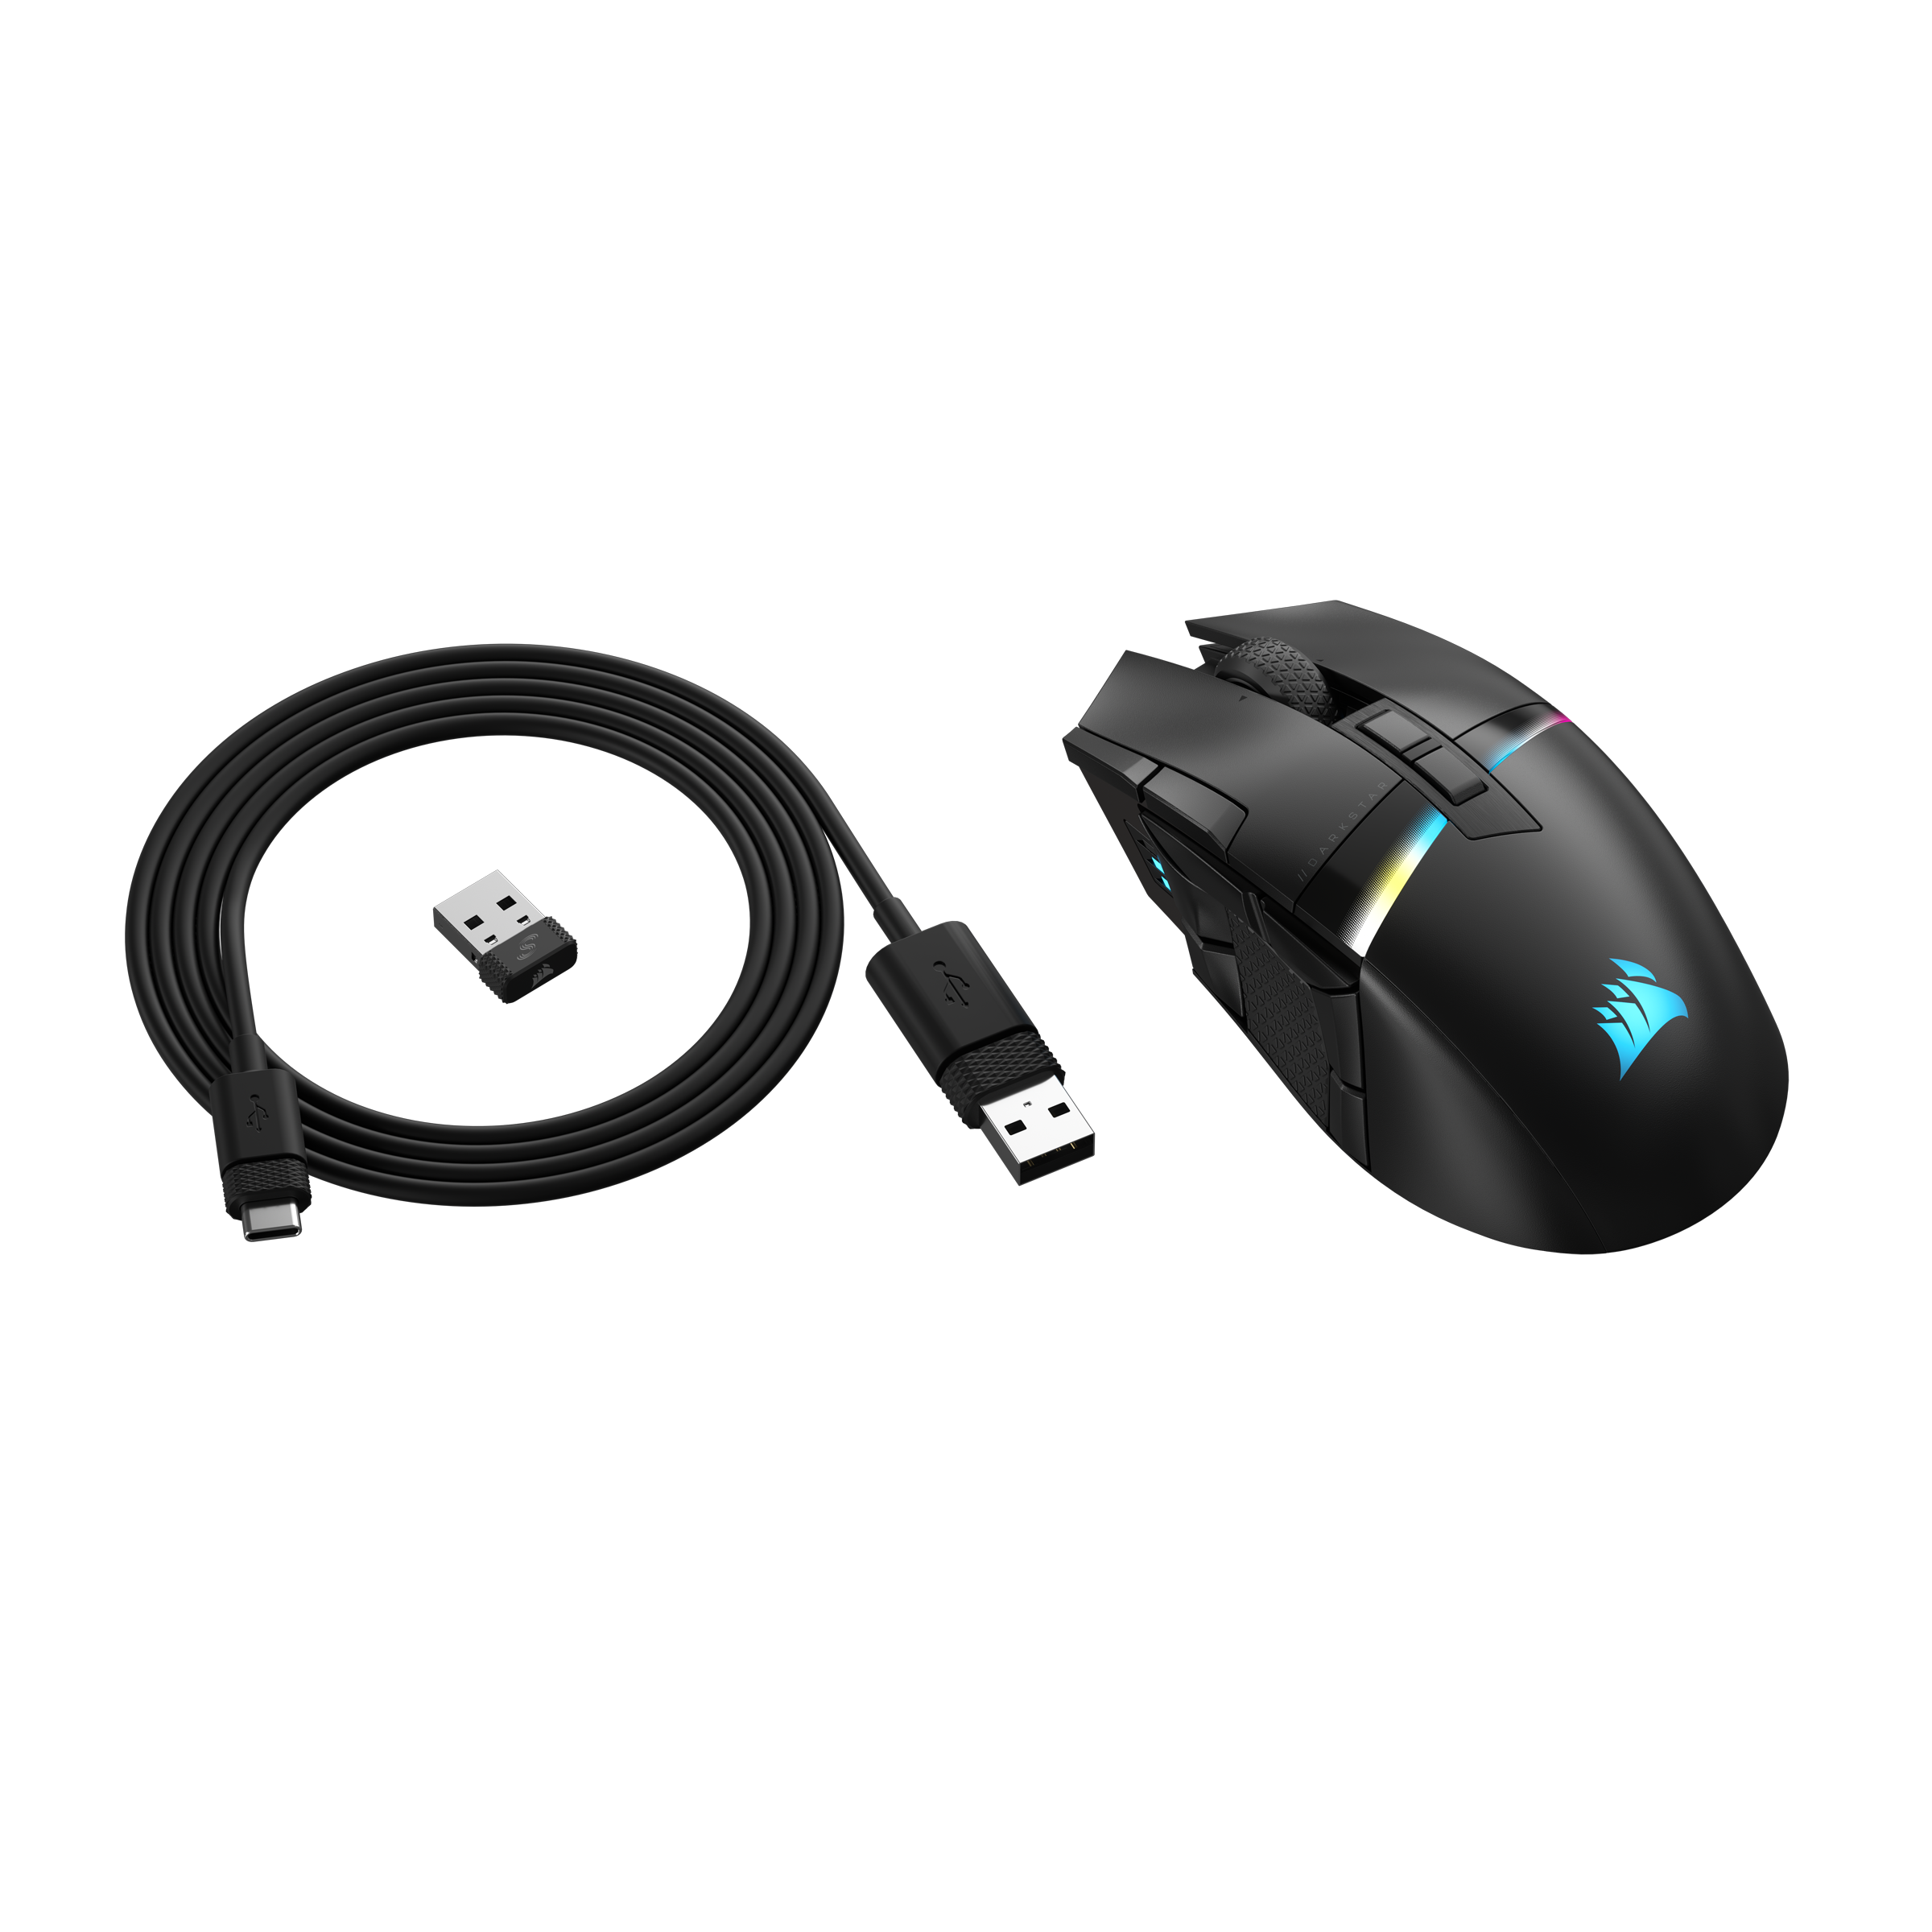 Corsair Gaming-Maus »DARKSTAR WIRELESS«, Bluetooth, 6-Tasten kaufen auf Seitencluster Rechnung